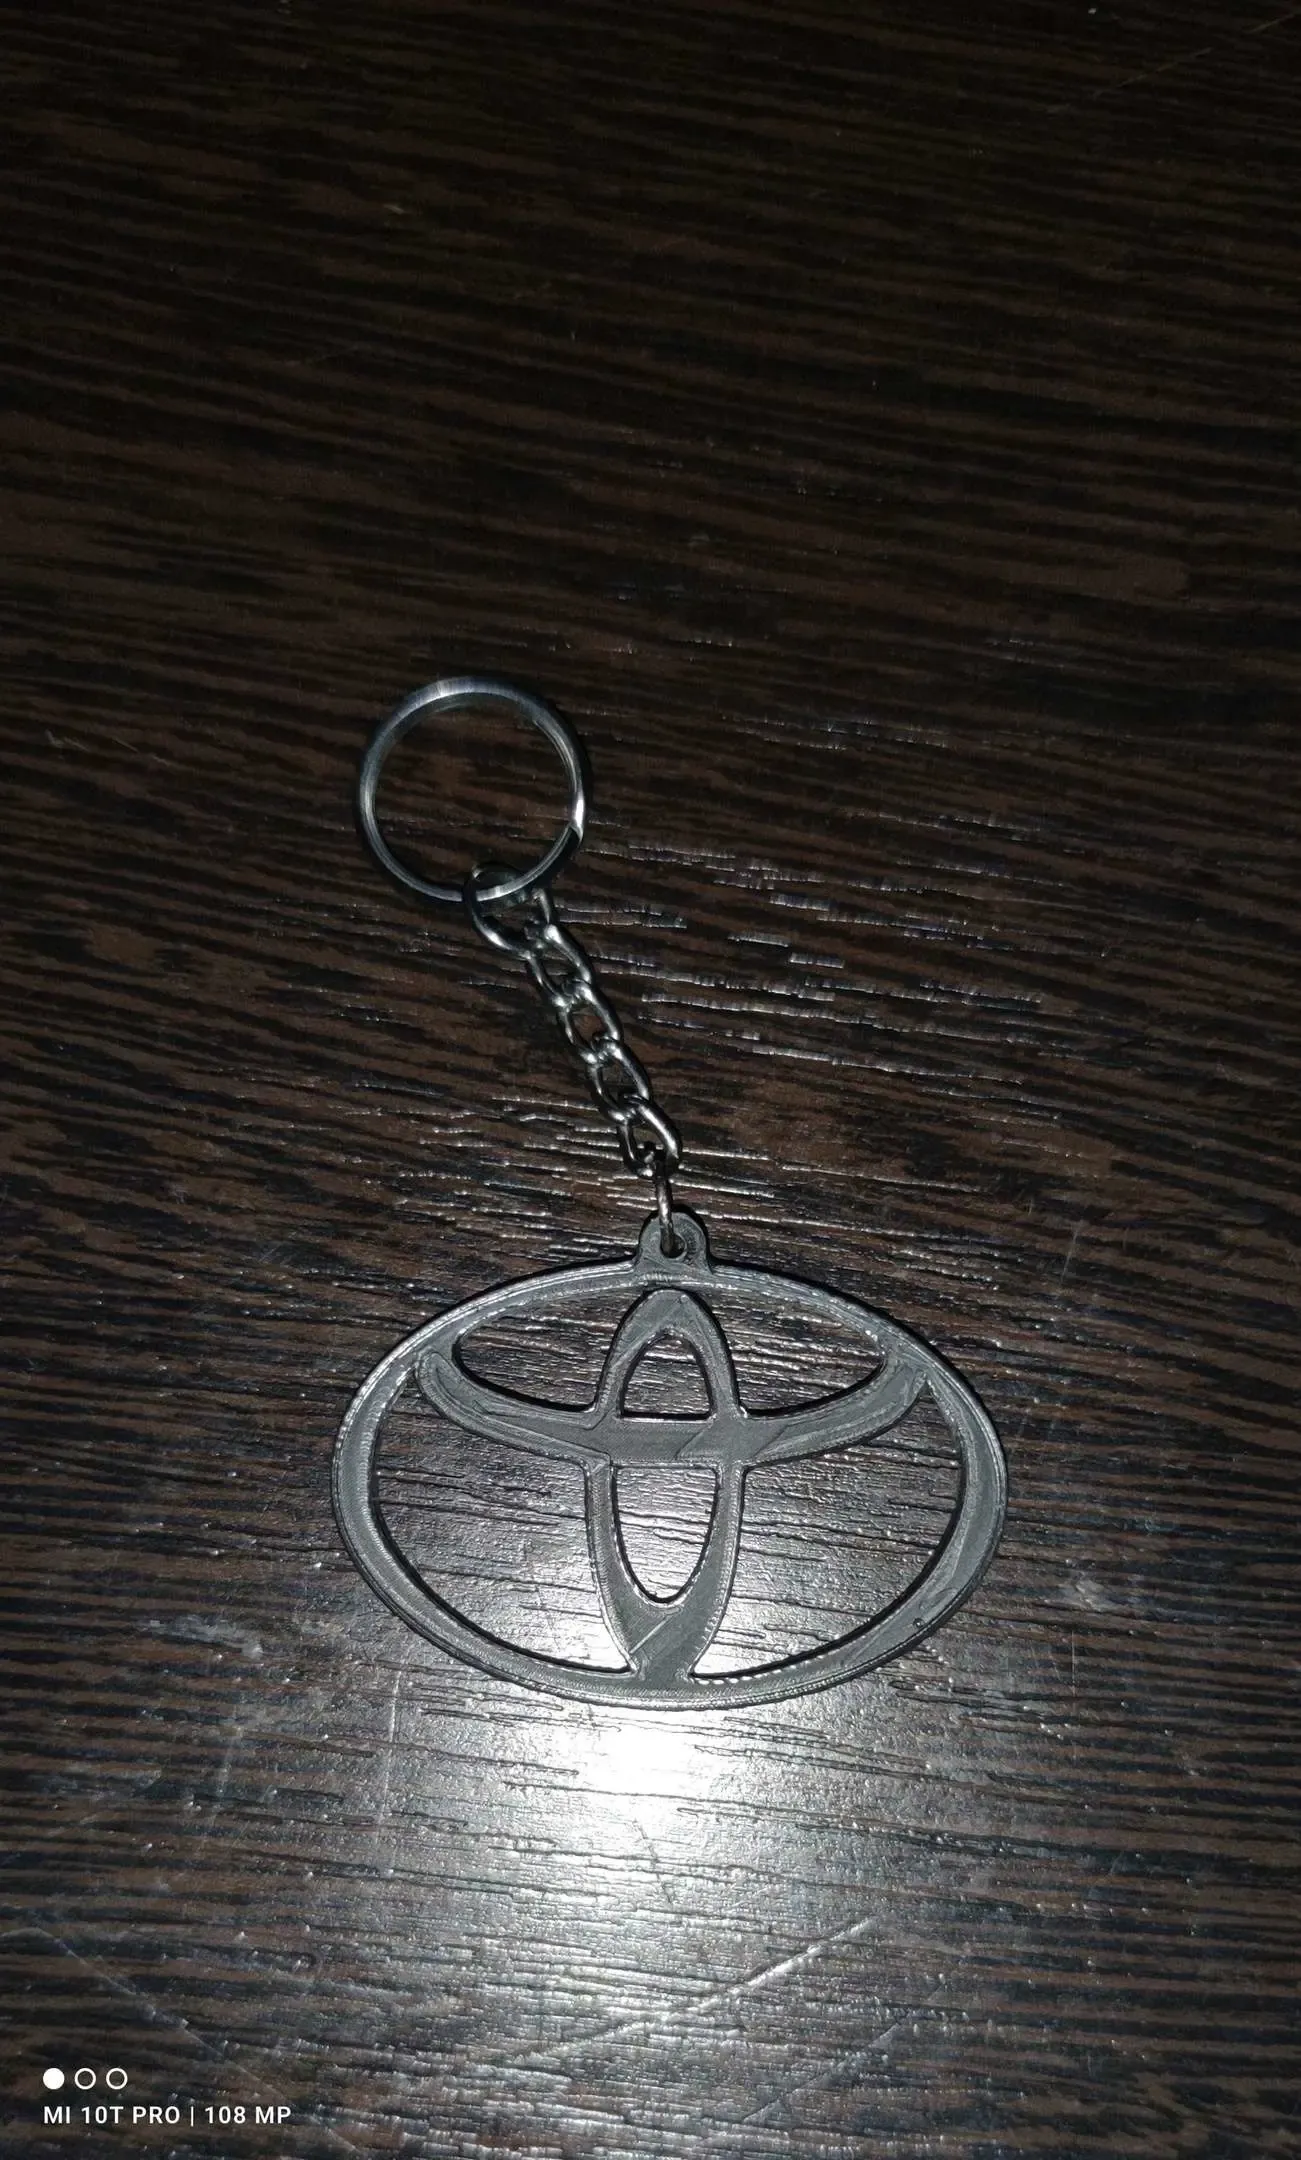 Toyota Keychain